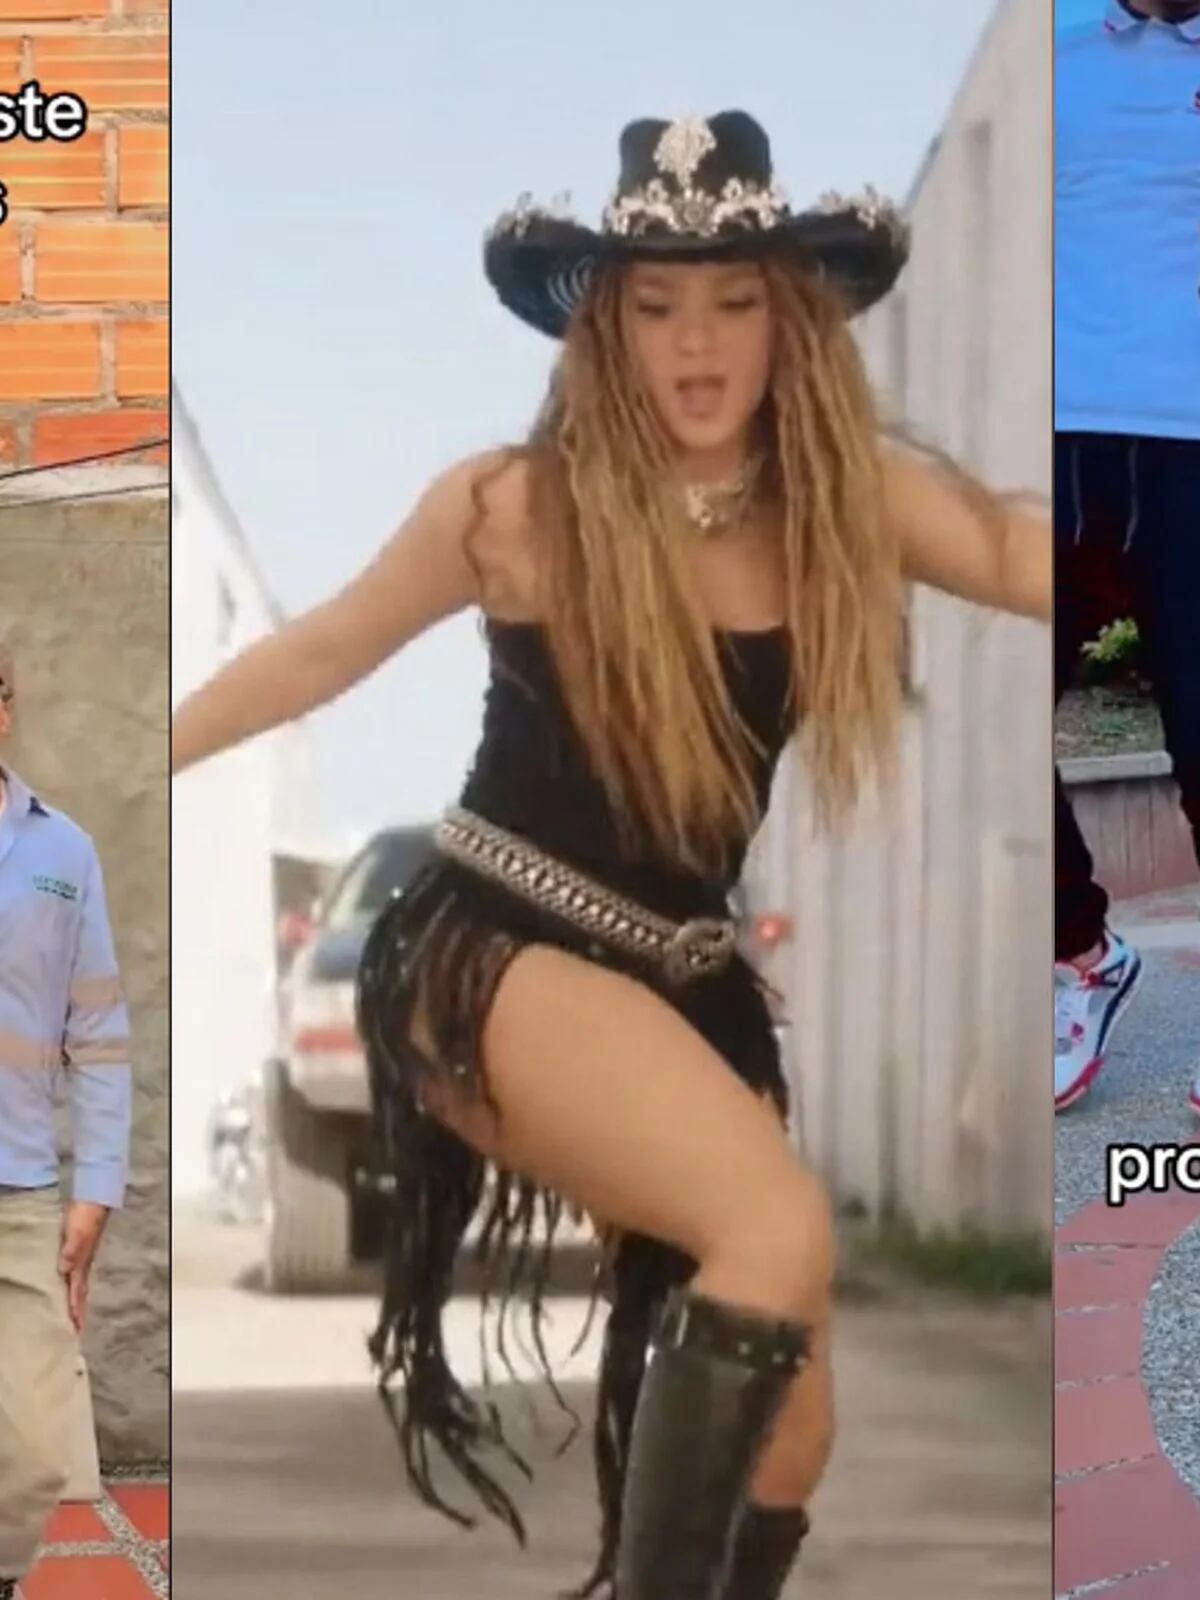 Le dedican 'El Jefe' de Shakira a su patrón y sale mal: así los corrieron  del trabajo